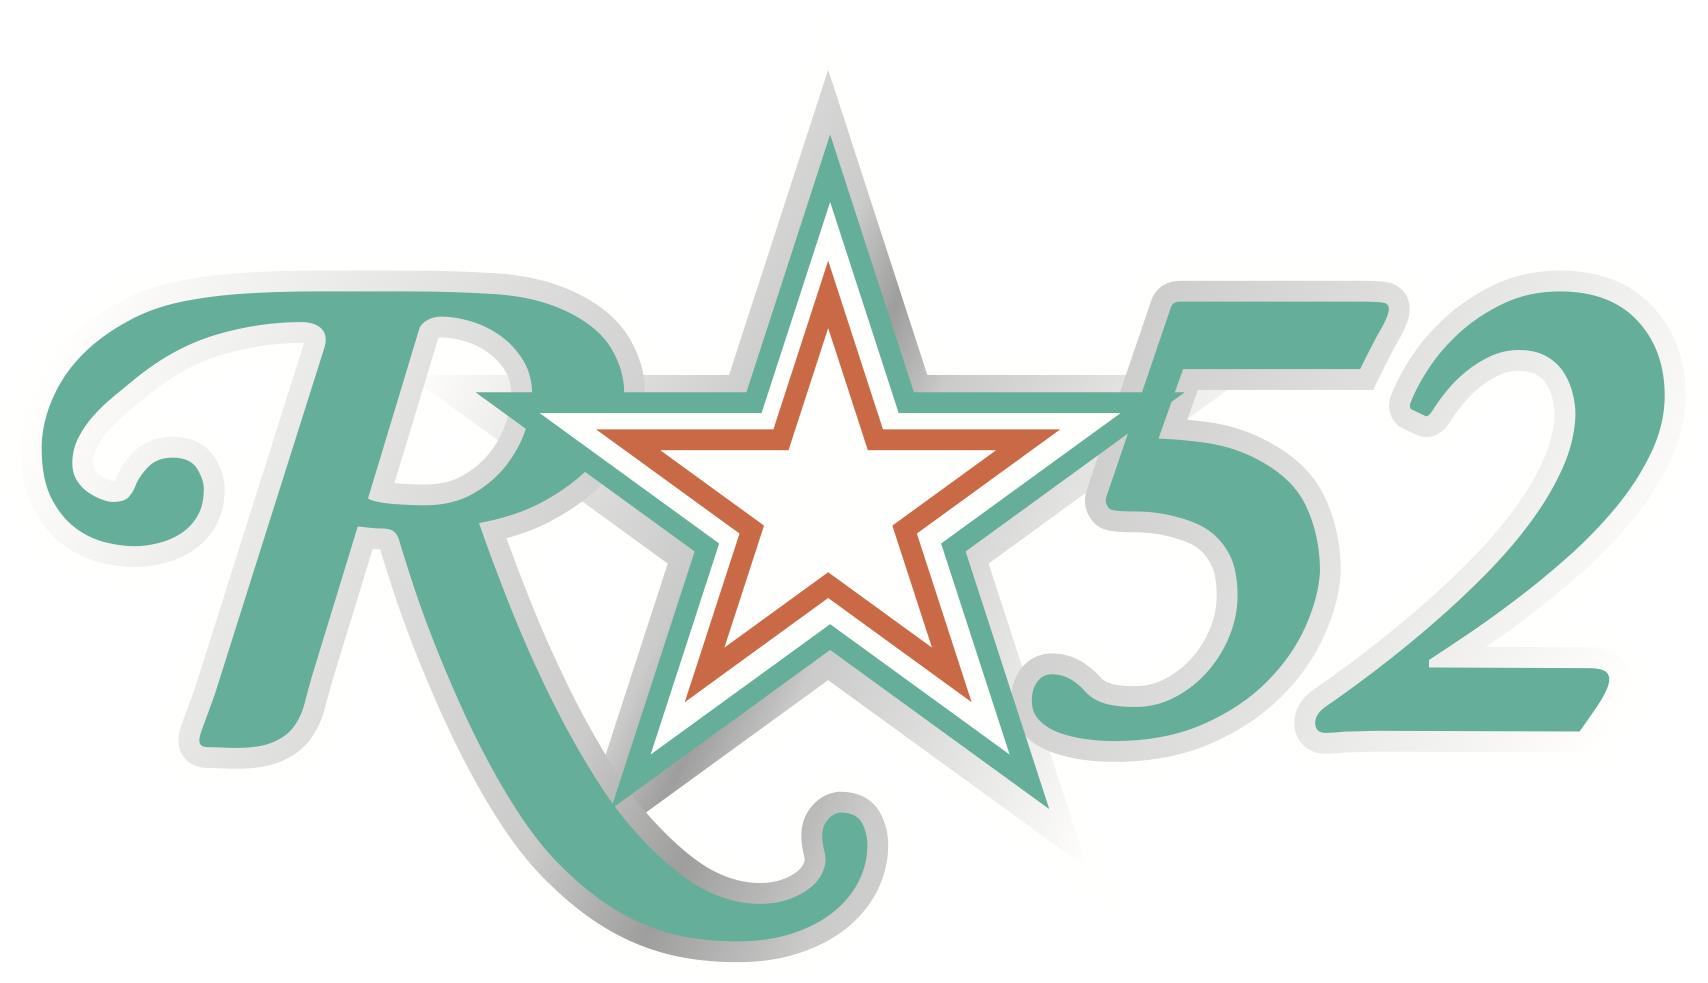 rstar52-2